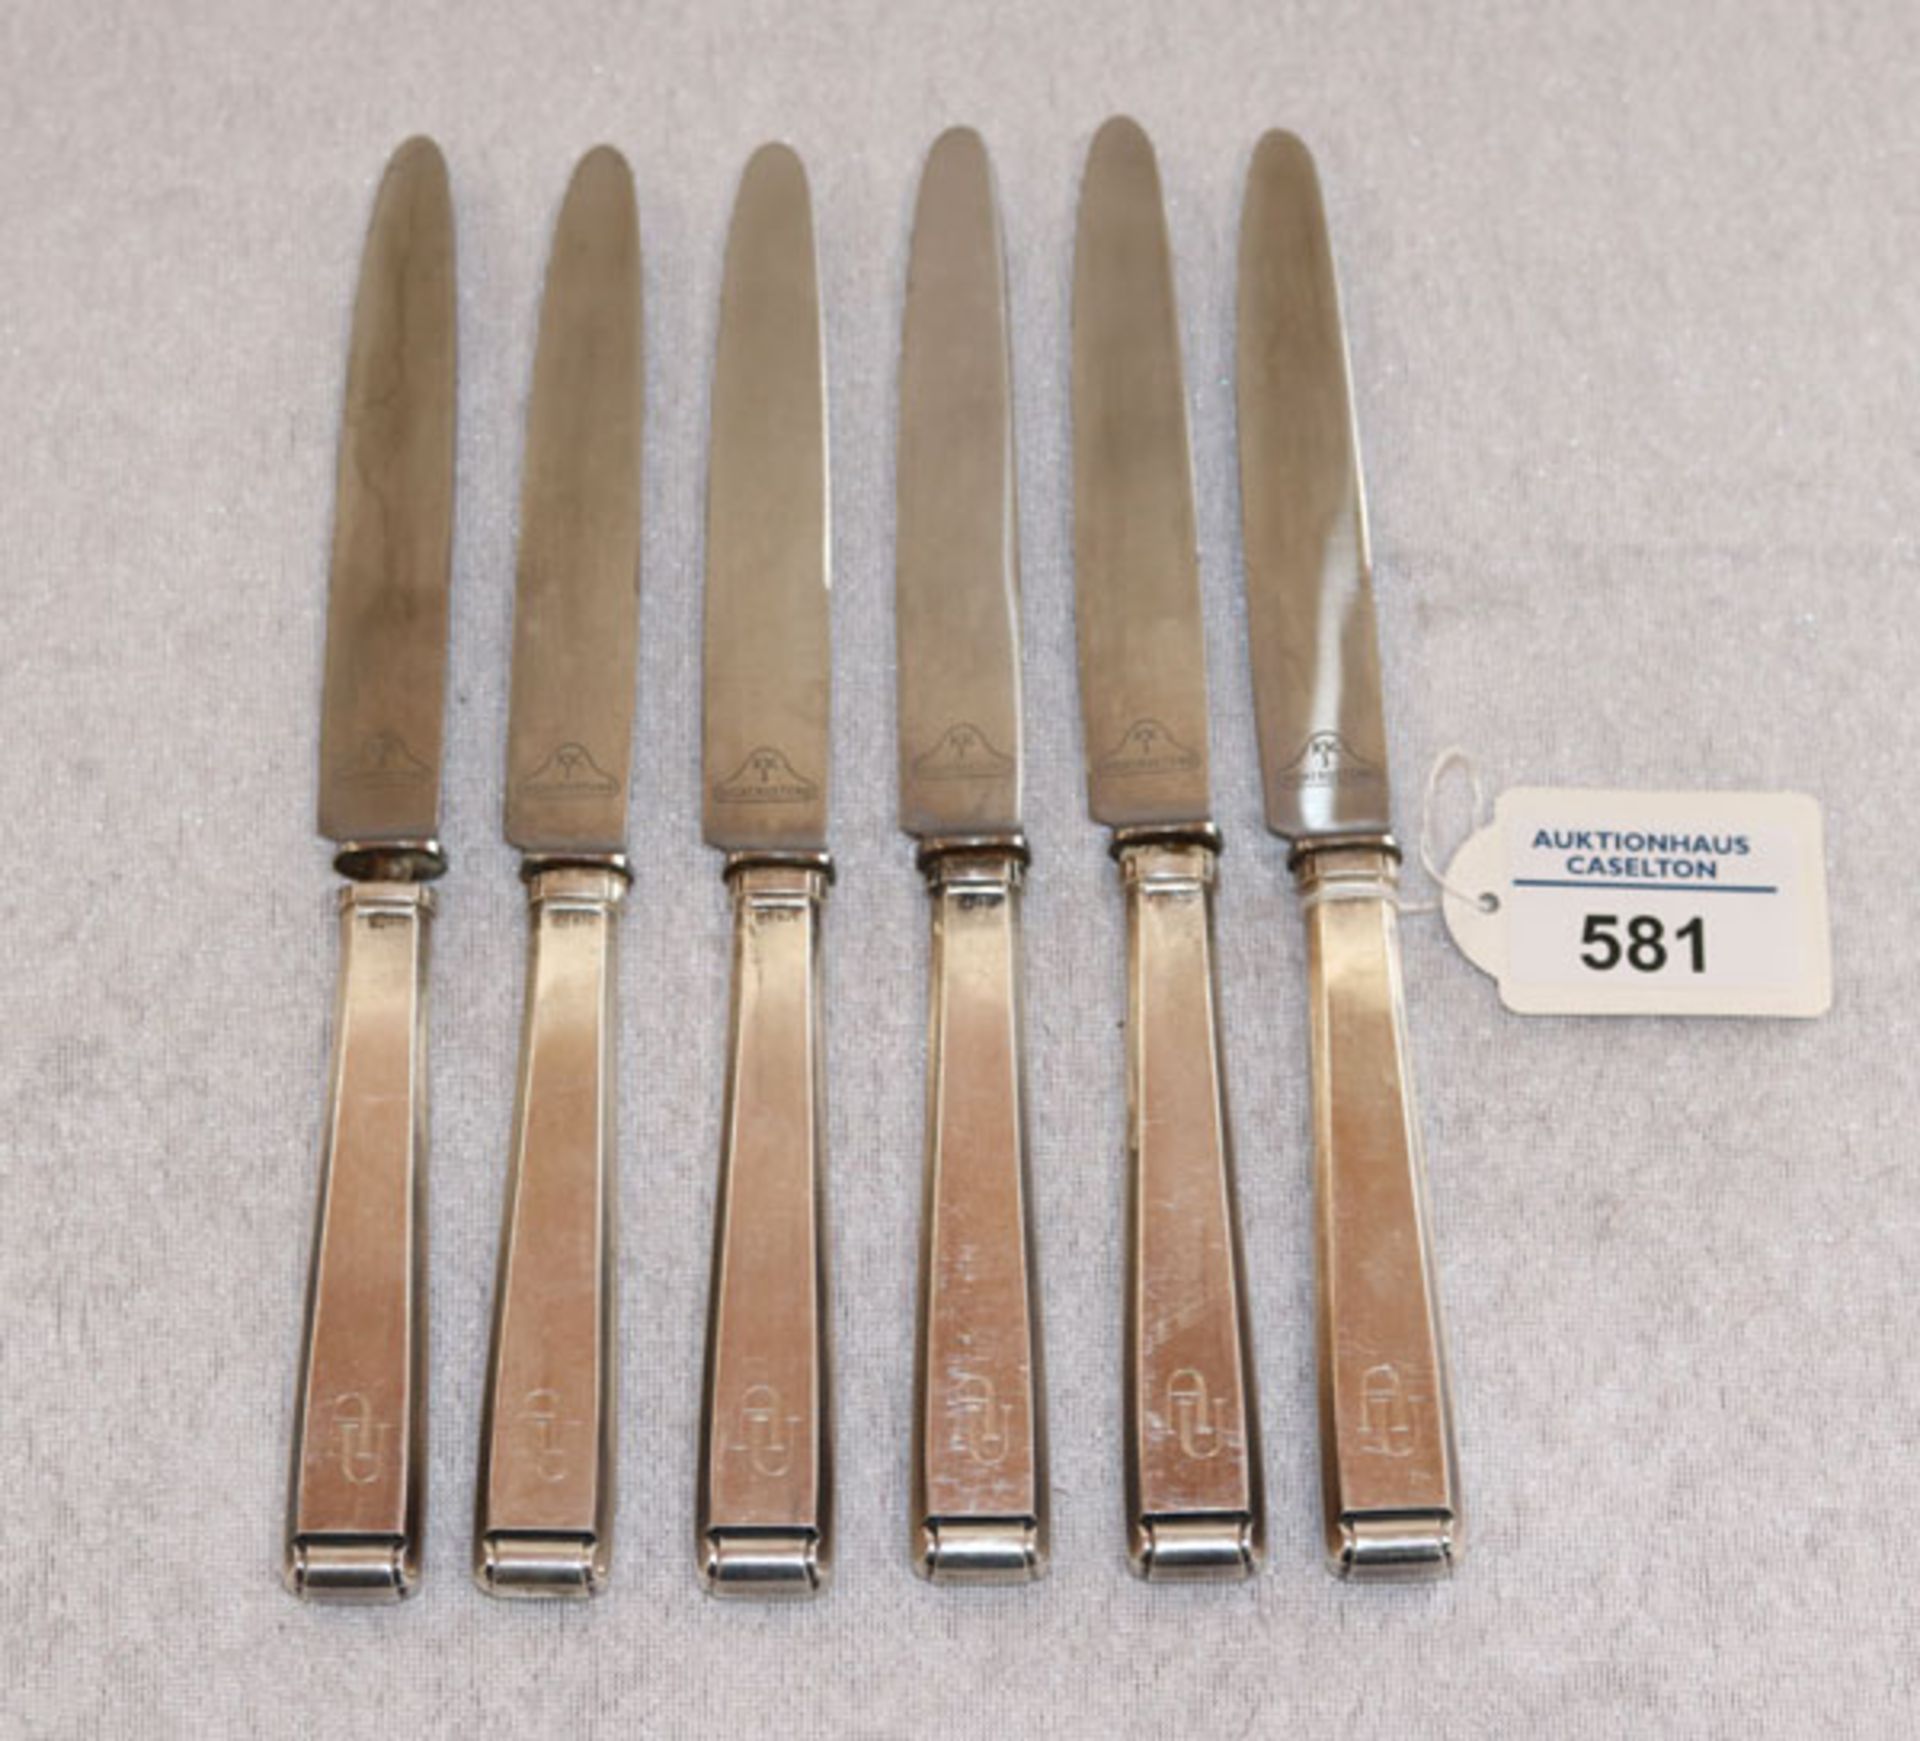 6 Messer mit 800 Silbergriffen, Monogrammgravur AU, Gebrauchsspuren, teils beschädigt